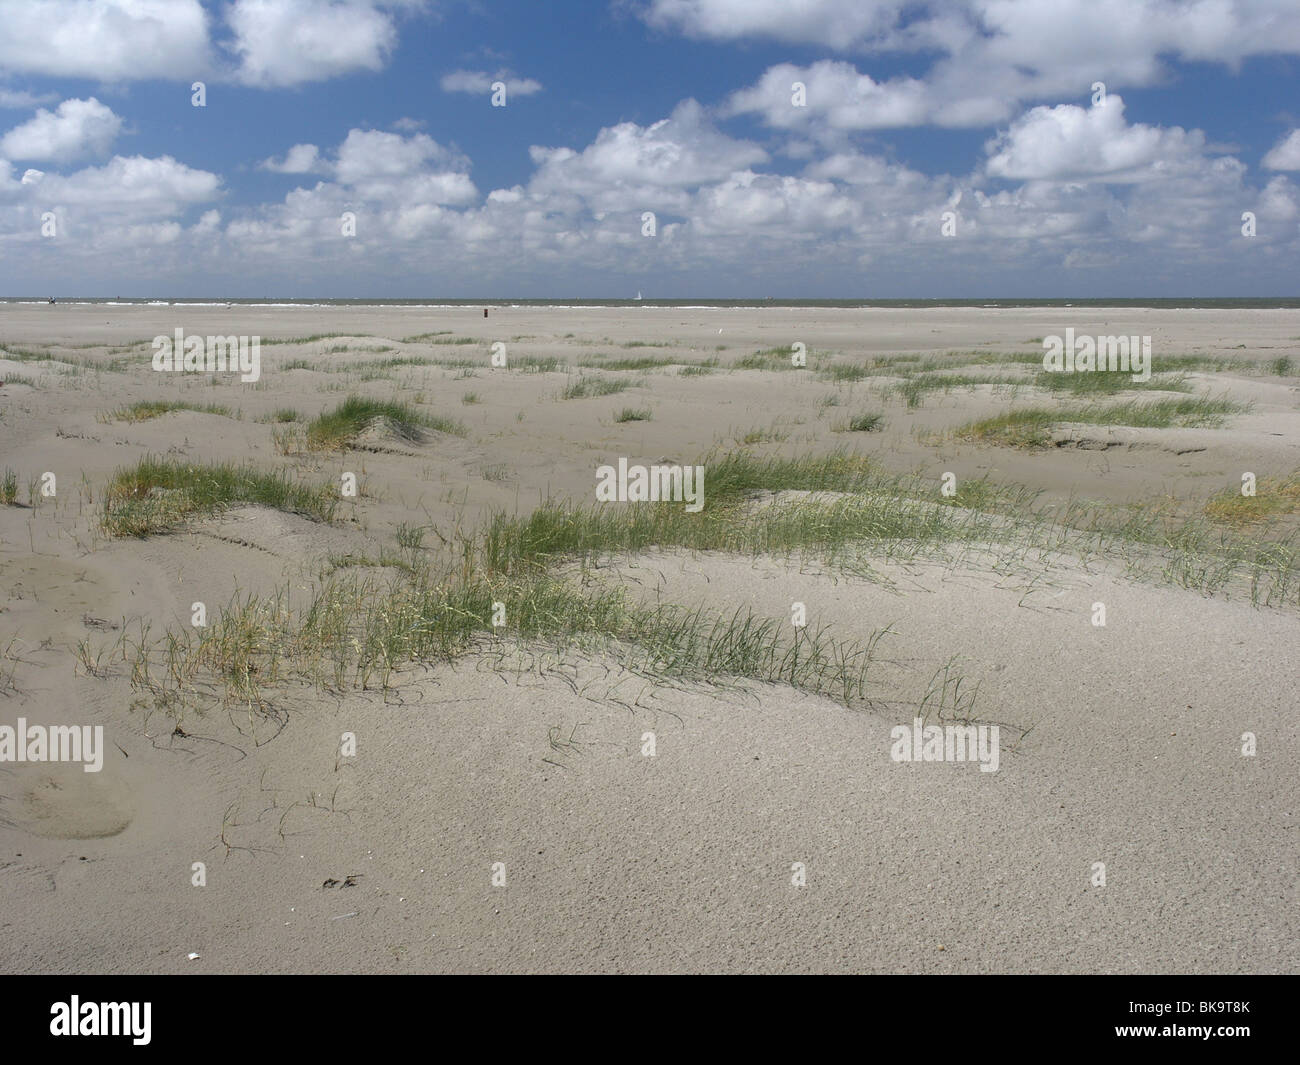 Prille duinvorming op het strand van Schiermonnikoog Stock Photo